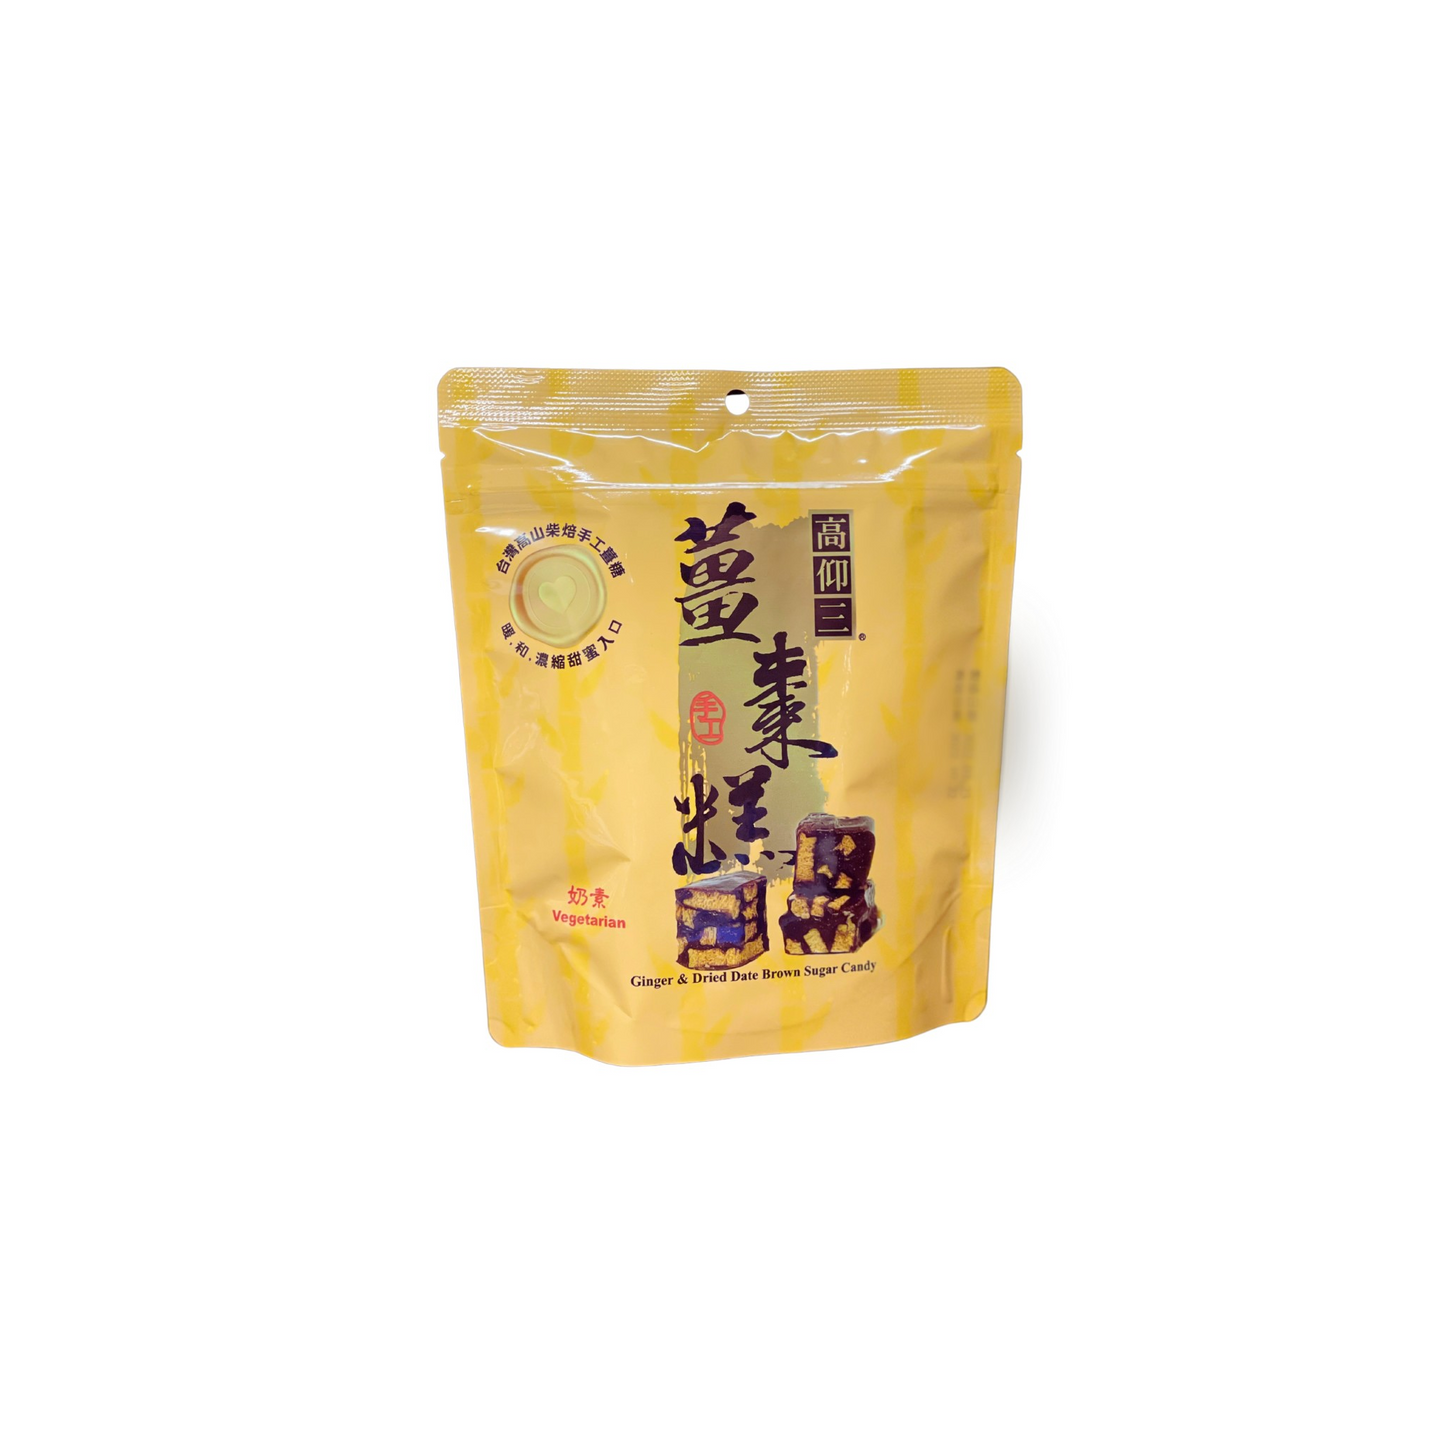 #5851 薑棗糕 Ginger&Dried Date Brown Sugar Candy (高仰三) 75g, 24/cs